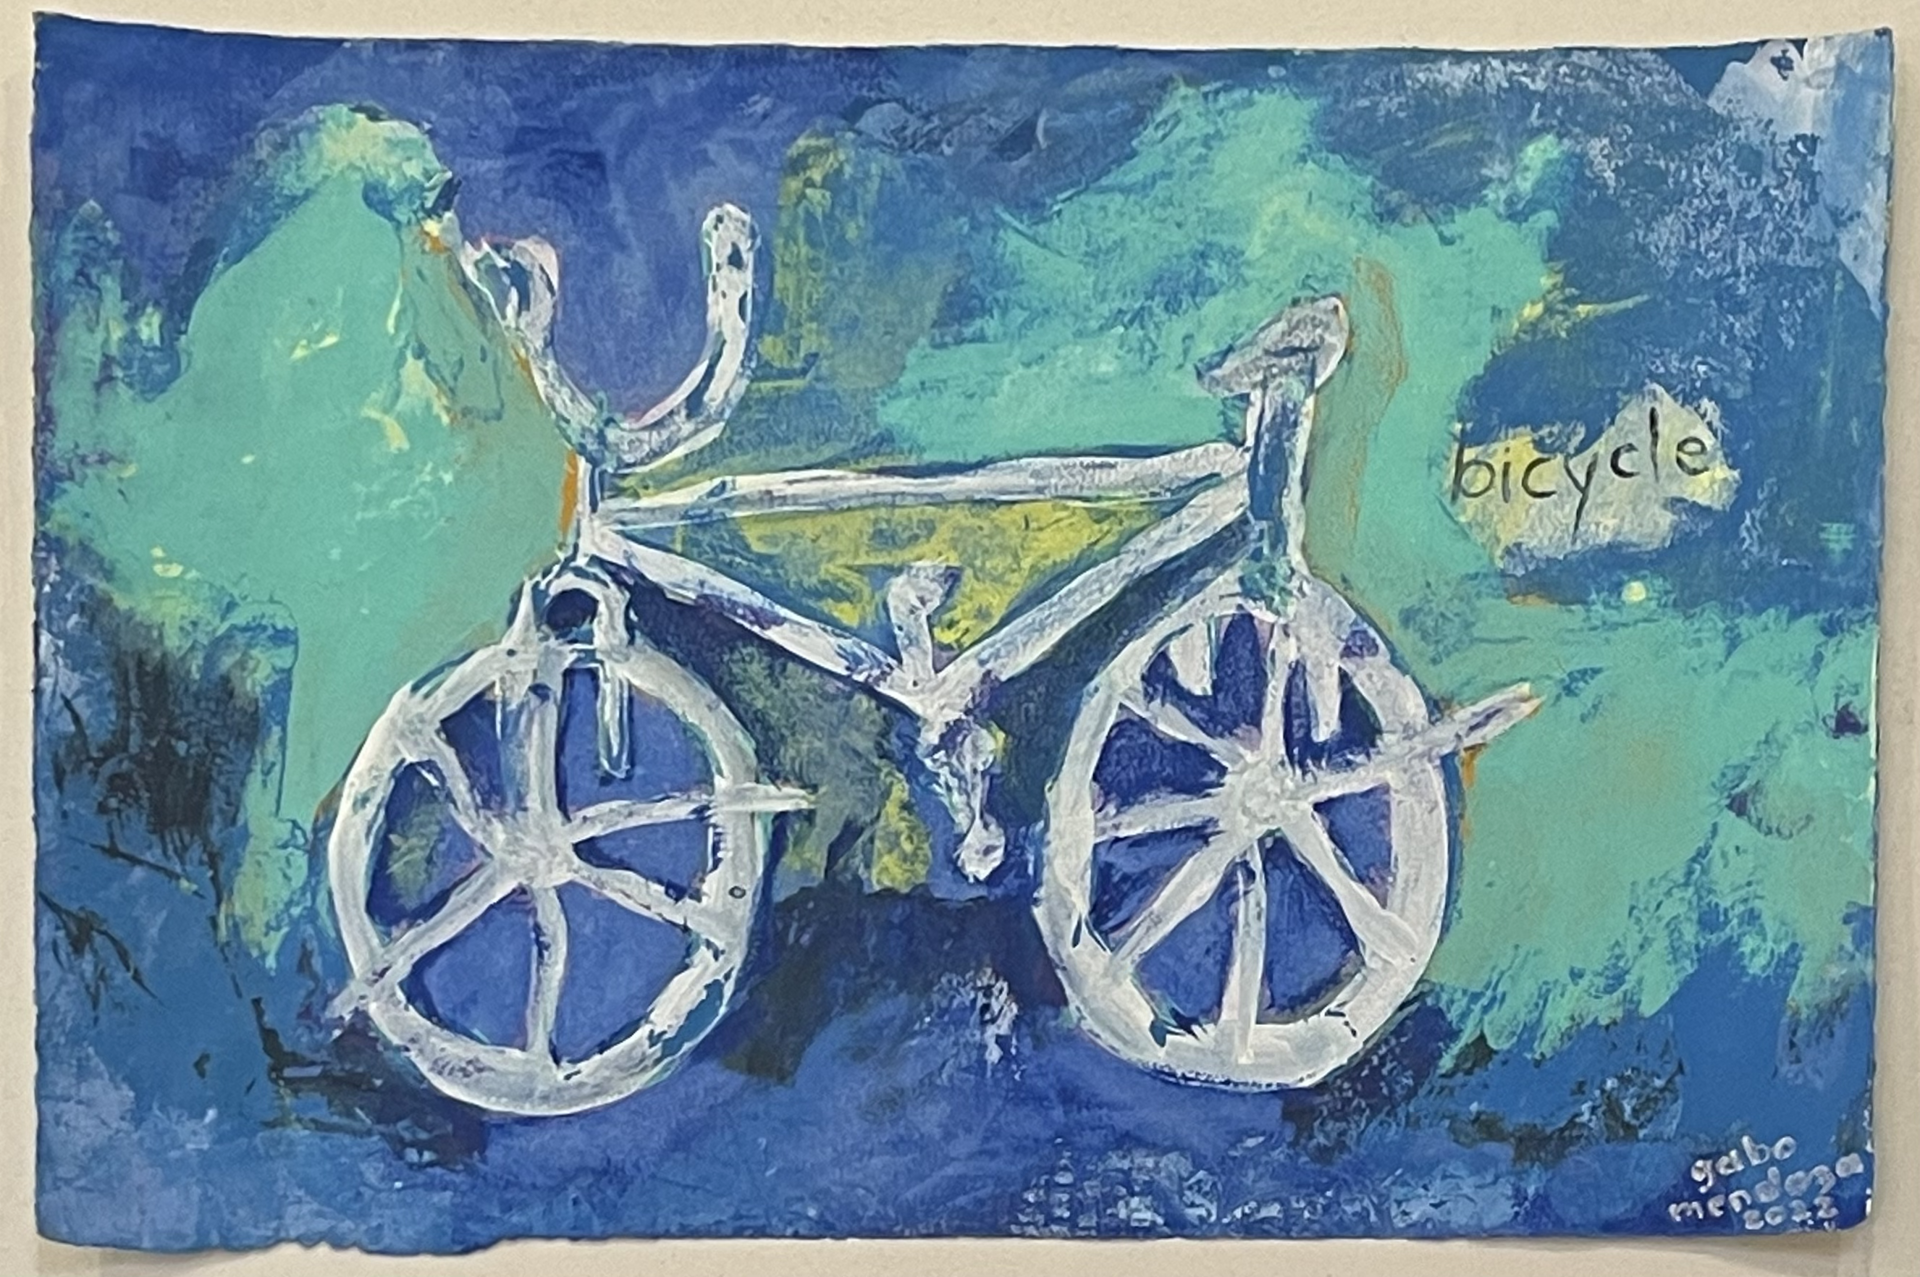 Bicicleta Azul y Verde (Blue and Green Bicycle) by Gabriel Mendoza